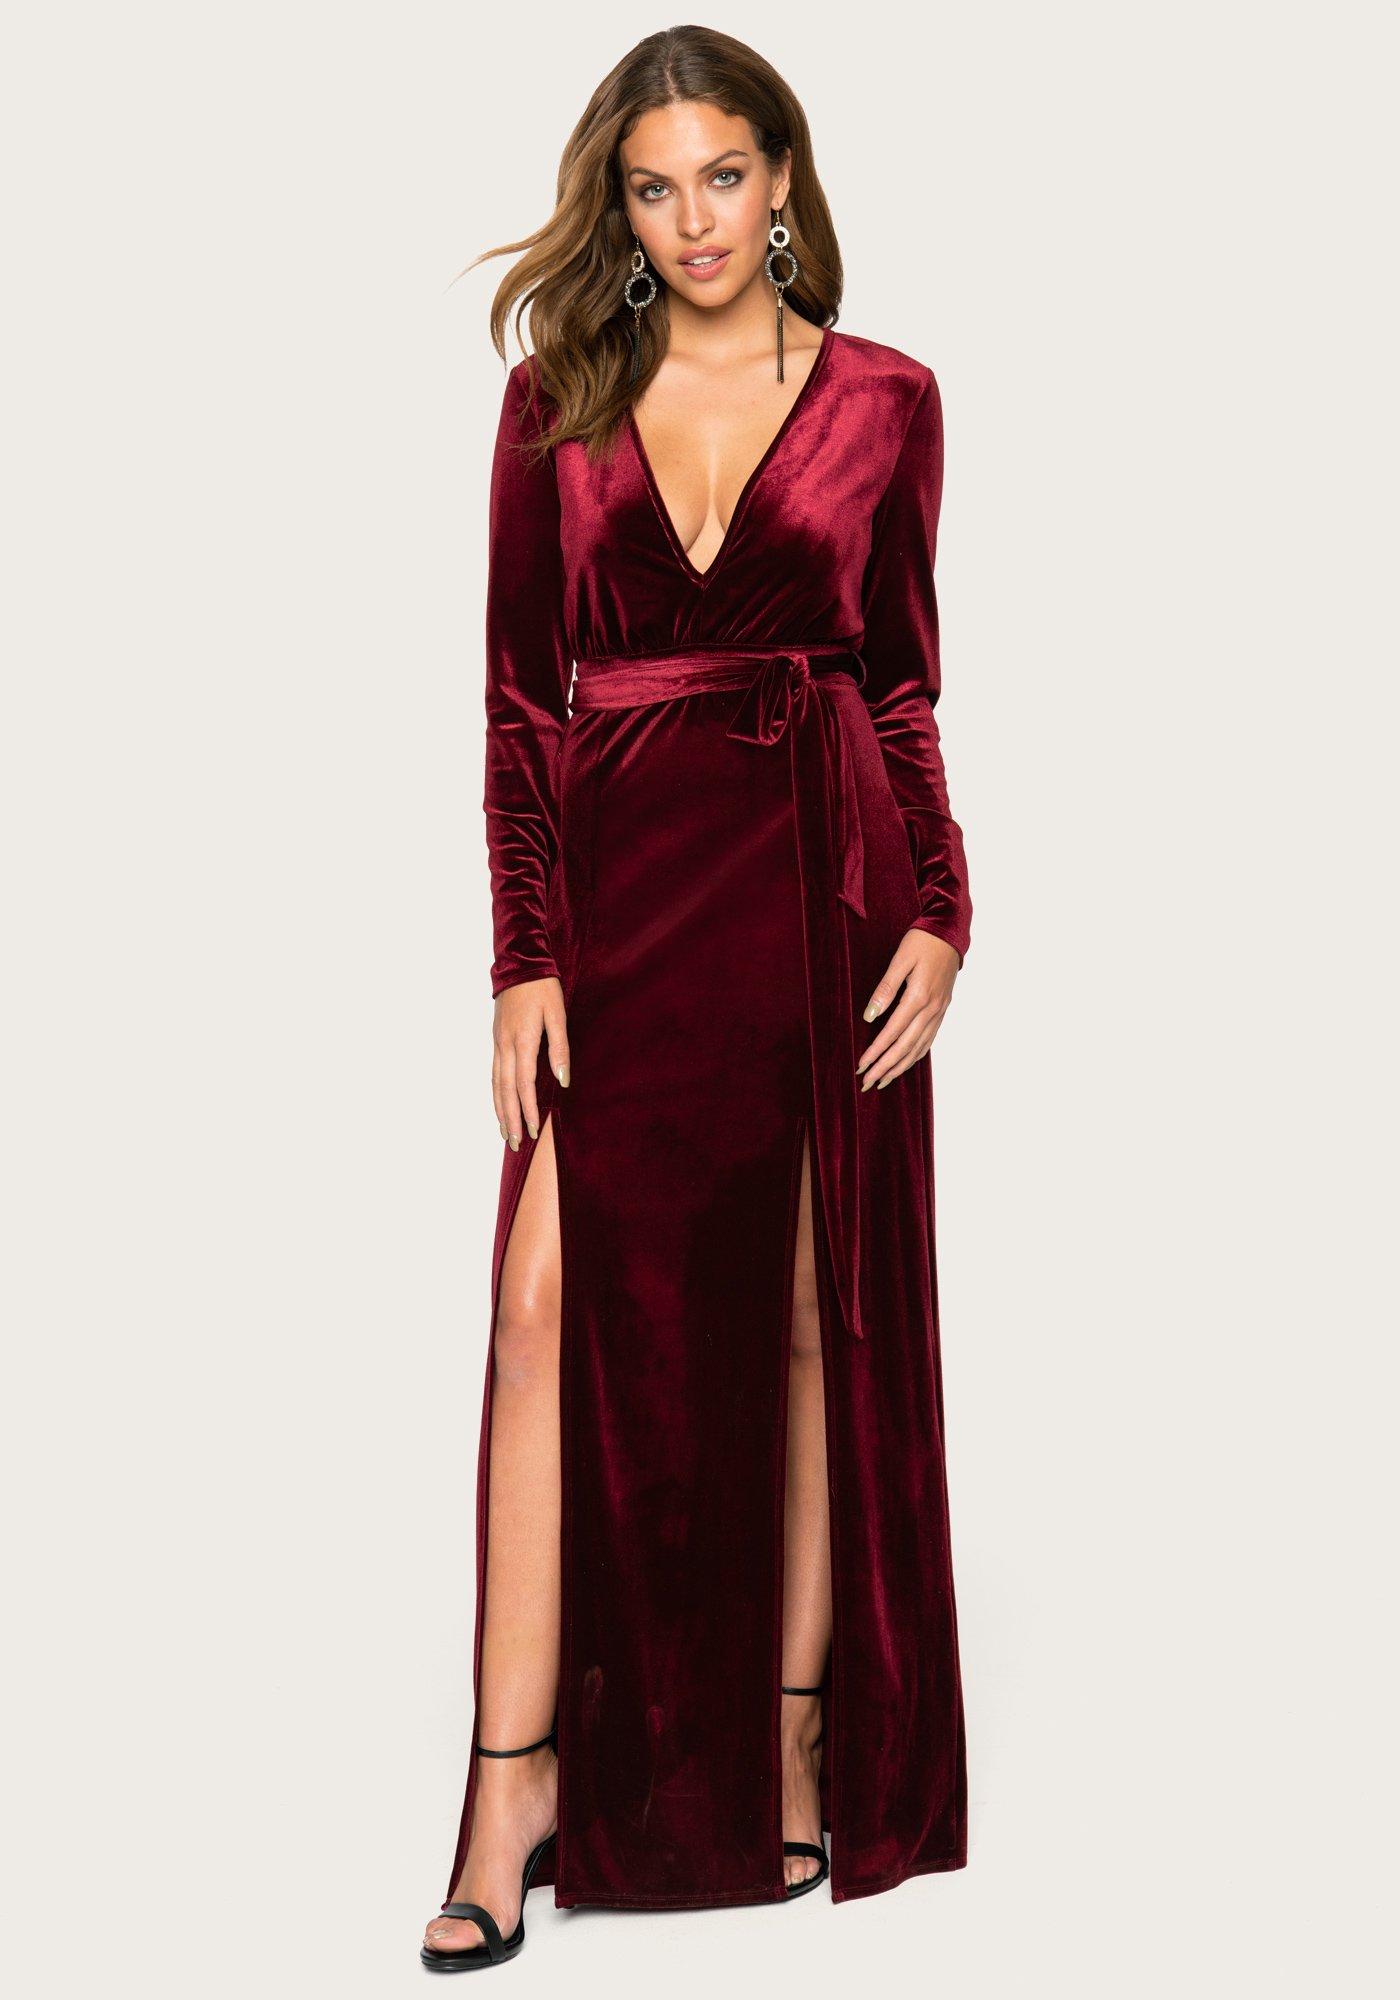 Bebe Velvet Double Slit Maxi Dress in Red - Lyst